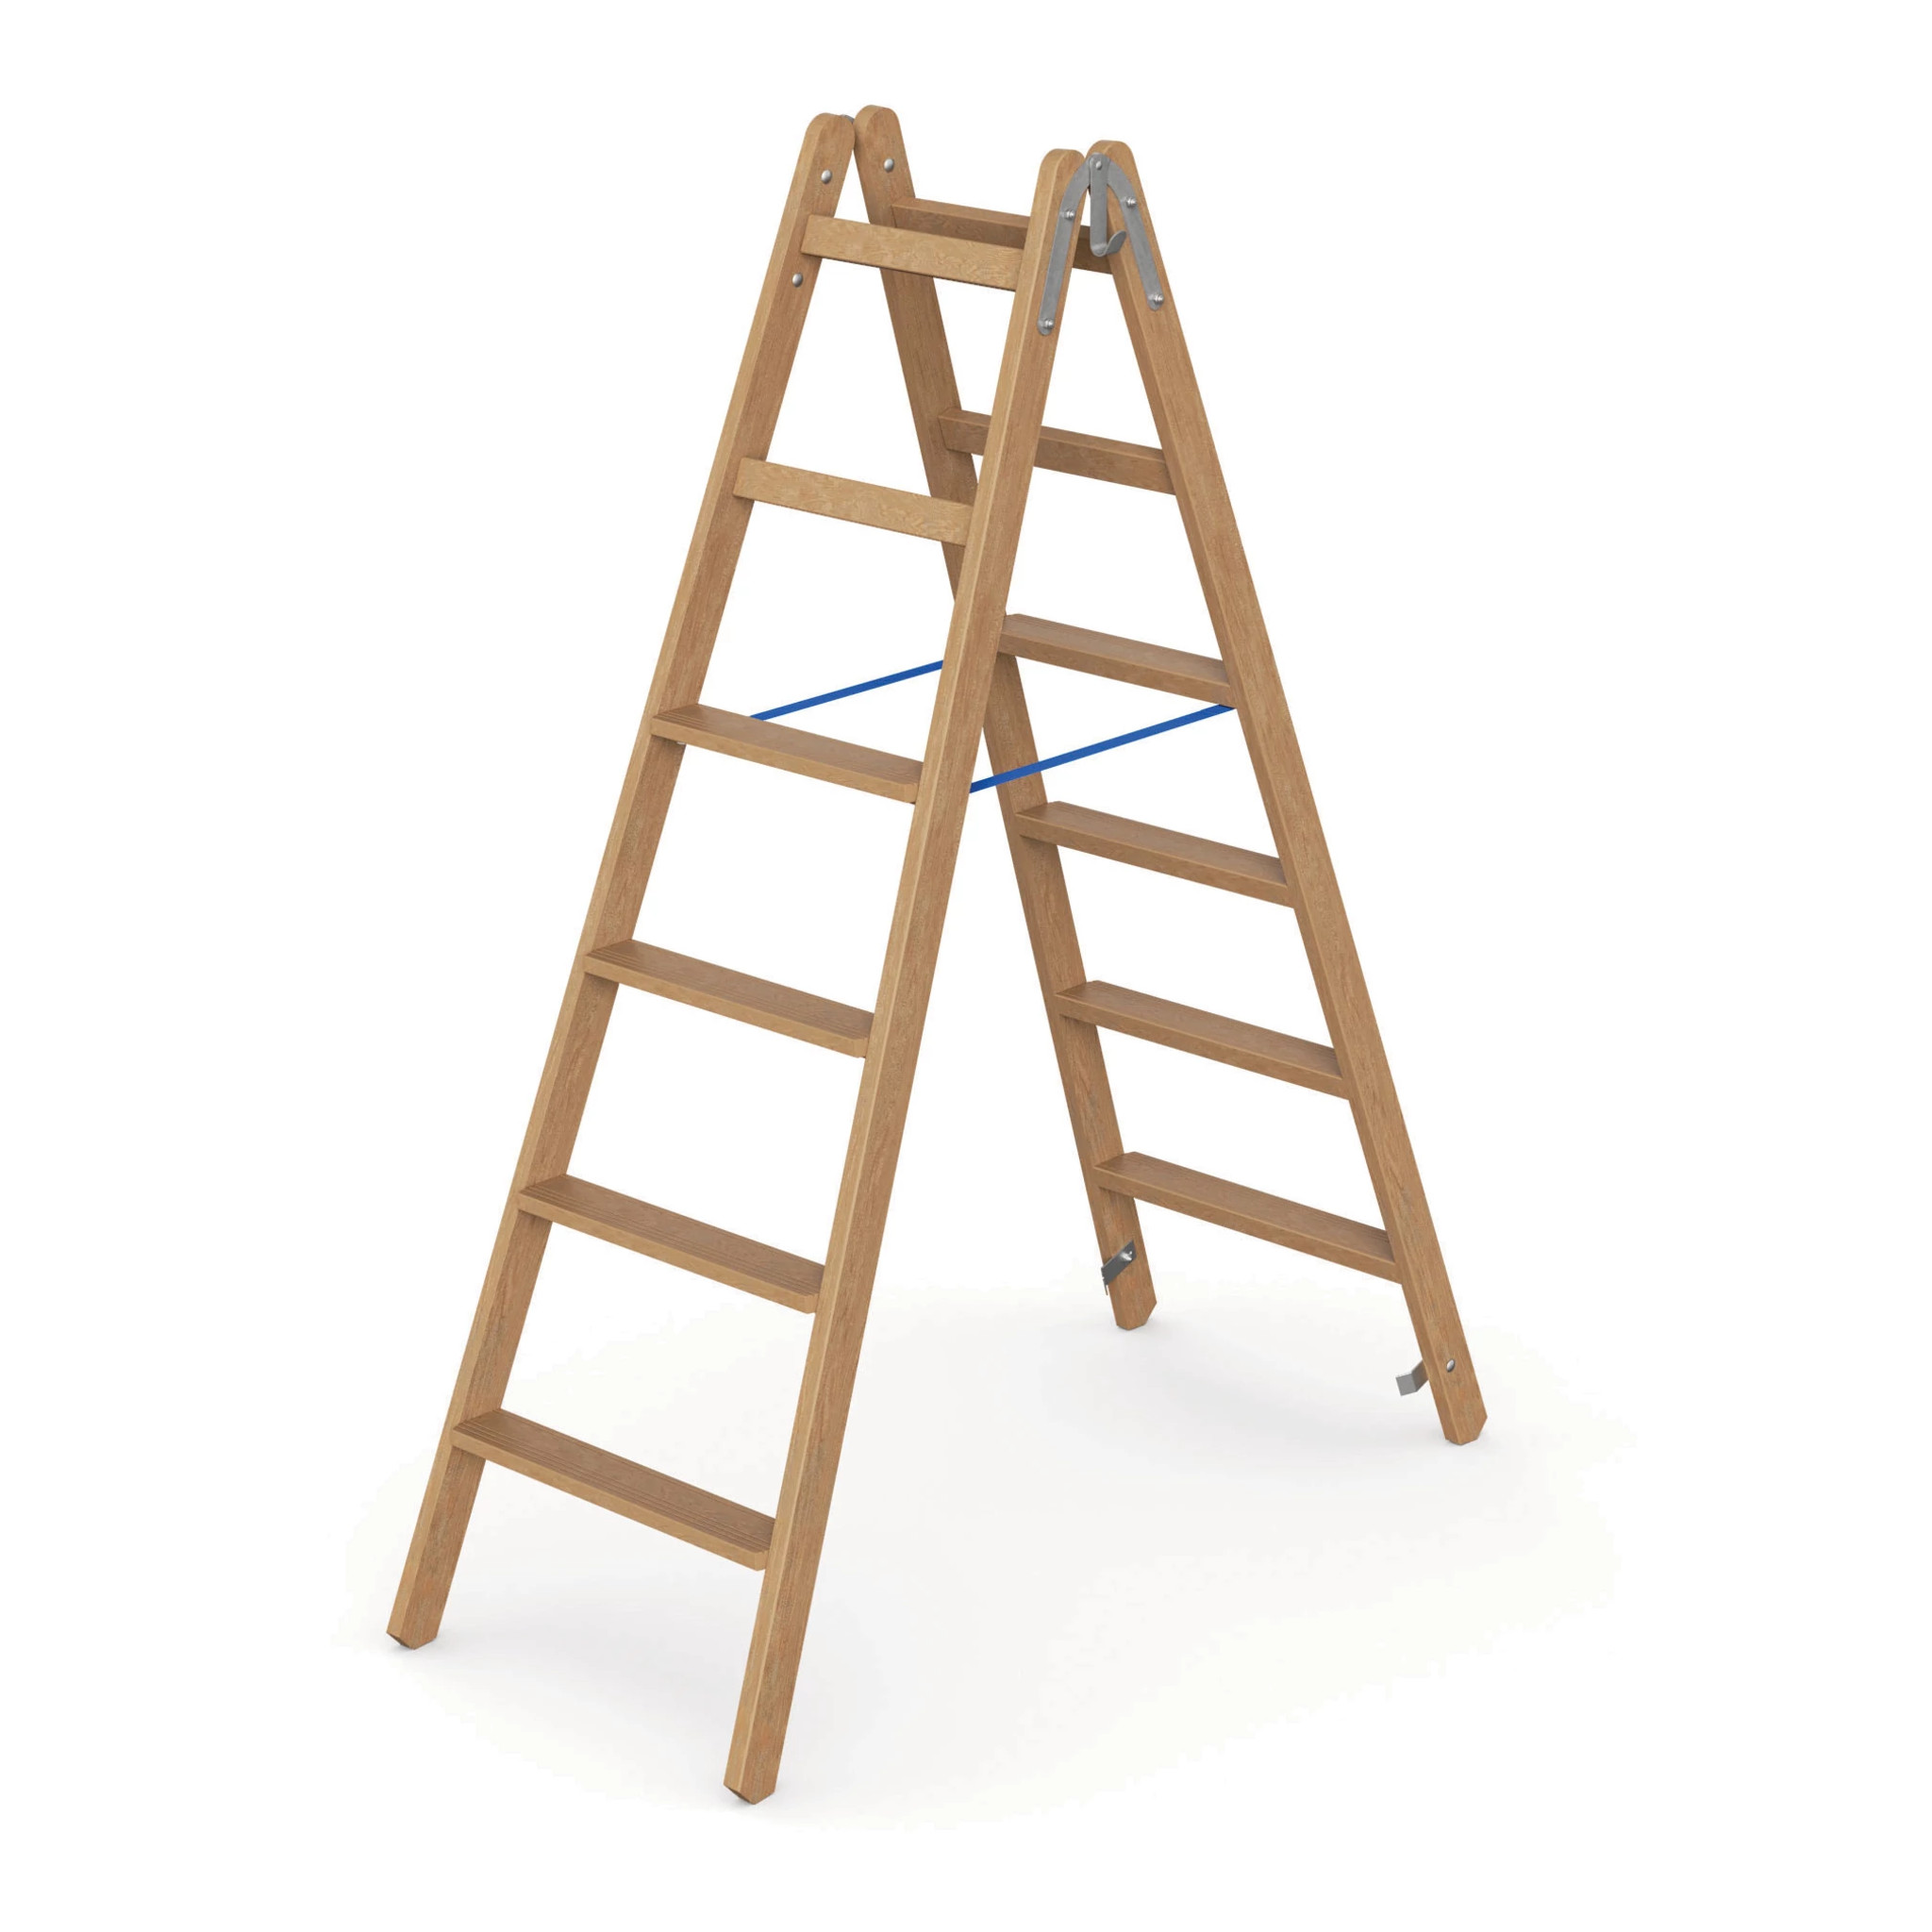 WERNER Holz Stufen Stehleiter, zweiseitig begehbar